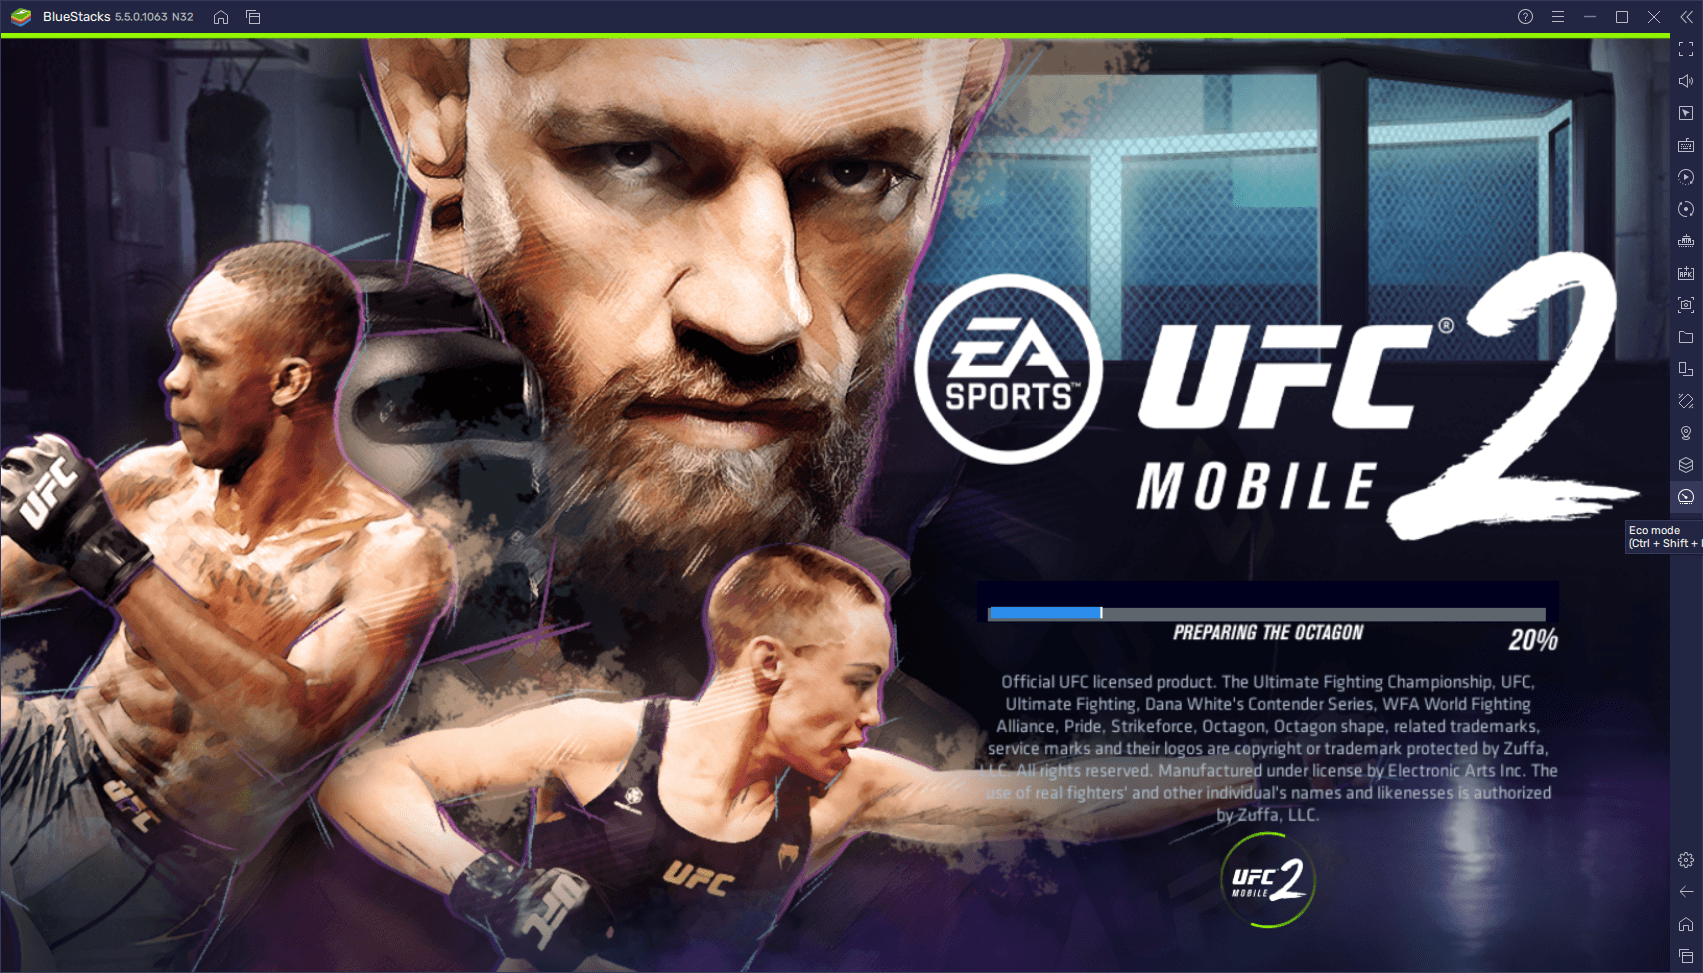 Conseils et Astuces Généraux dans UFC Mobile 2 pour Optimiser Votre Équipe